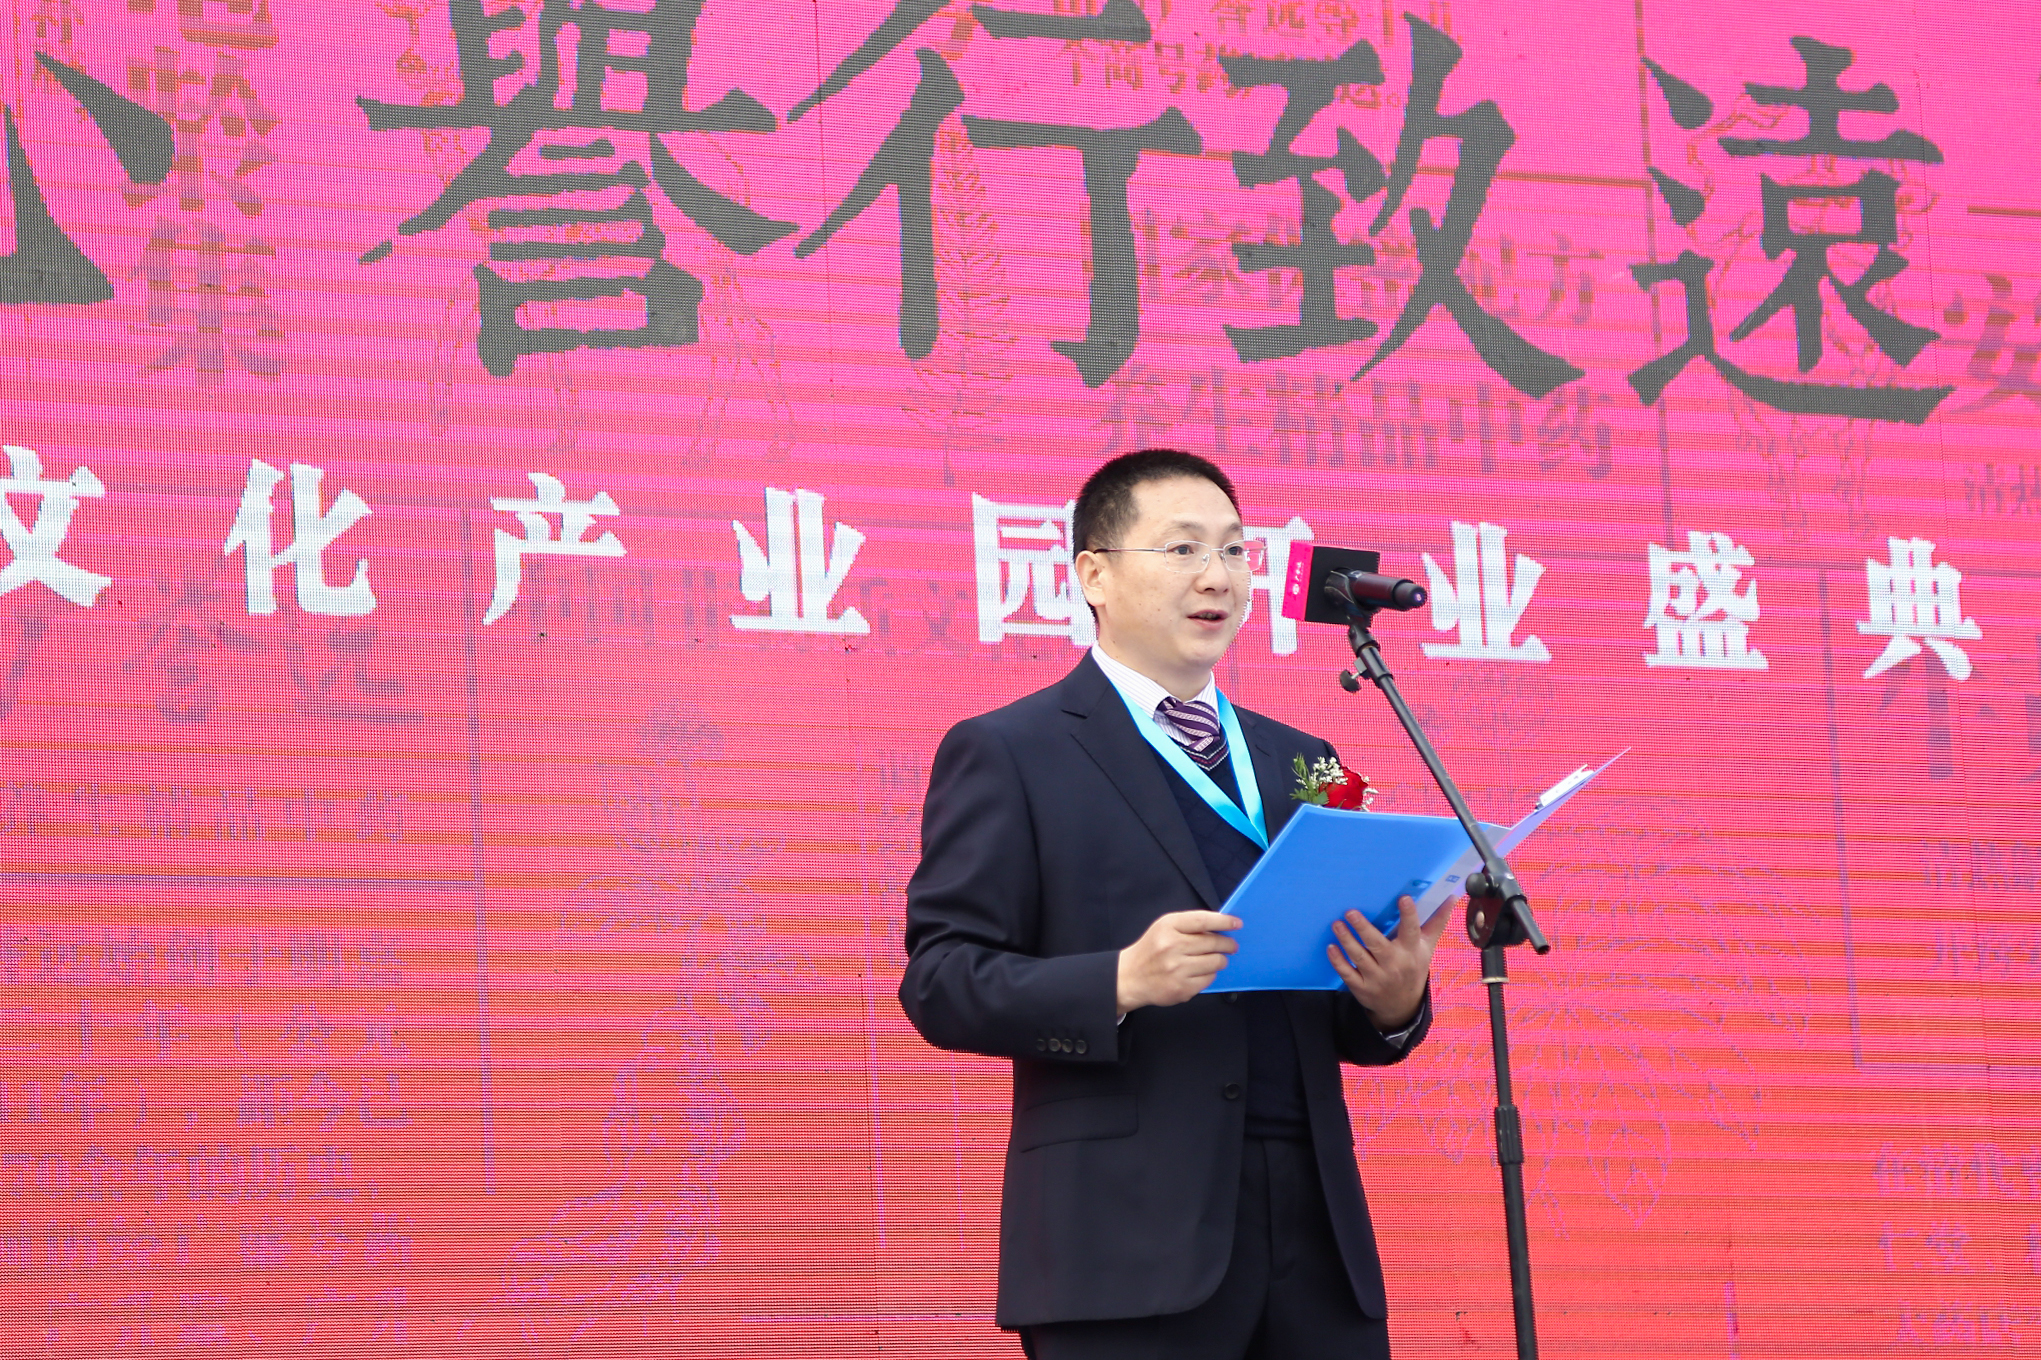 “健康中国•关爱行”—广誉远物资捐赠仪式于2018年10月19日在山西太原举办(图1)